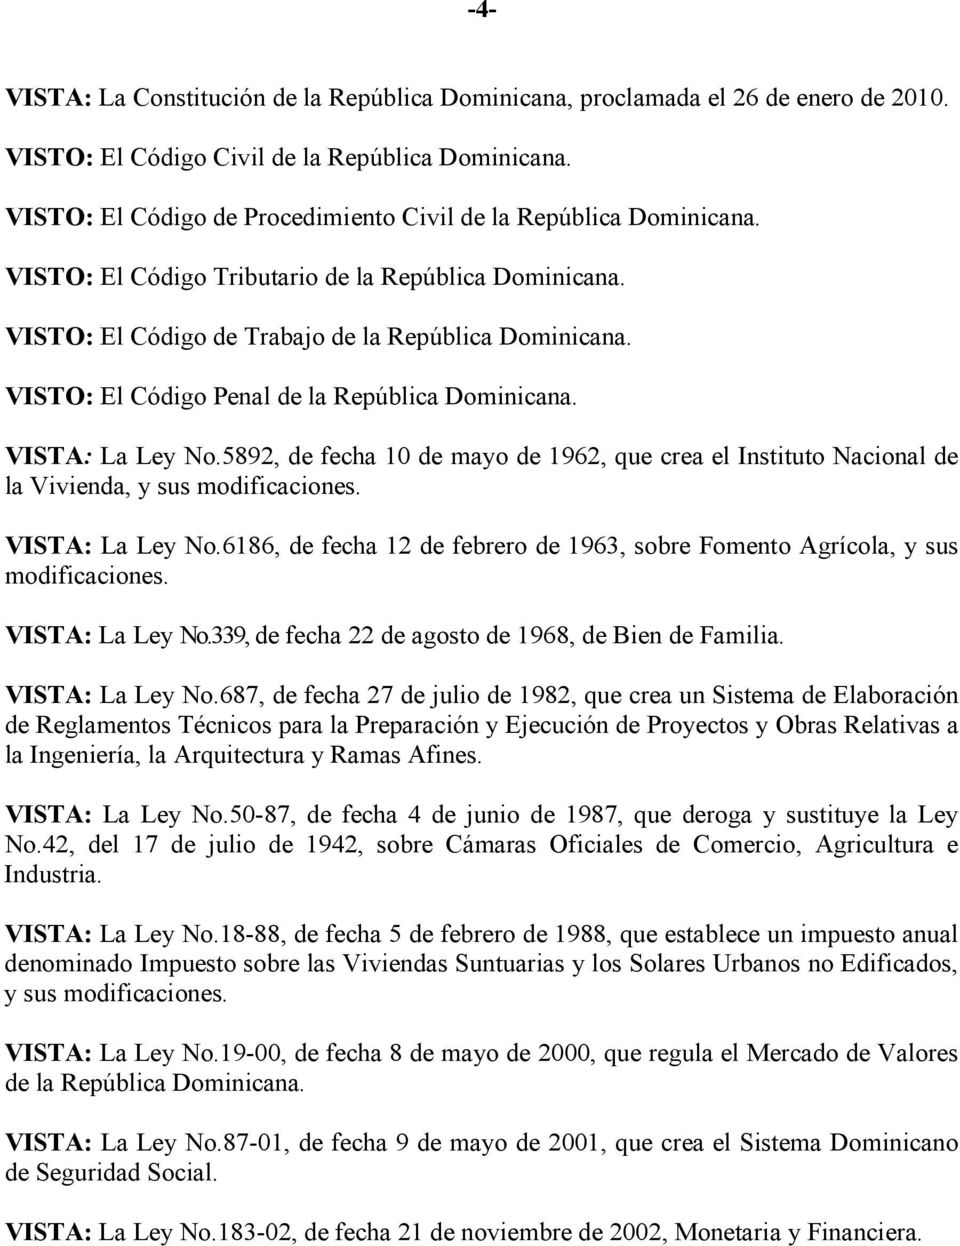 VISTO: El Código Penal de la República Dominicana. VISTA: La Ley No.5892, de fecha 10 de mayo de 1962, que crea el Instituto Nacional de la Vivienda, y sus modificaciones. VISTA: La Ley No.6186, de fecha 12 de febrero de 1963, sobre Fomento Agrícola, y sus modificaciones.